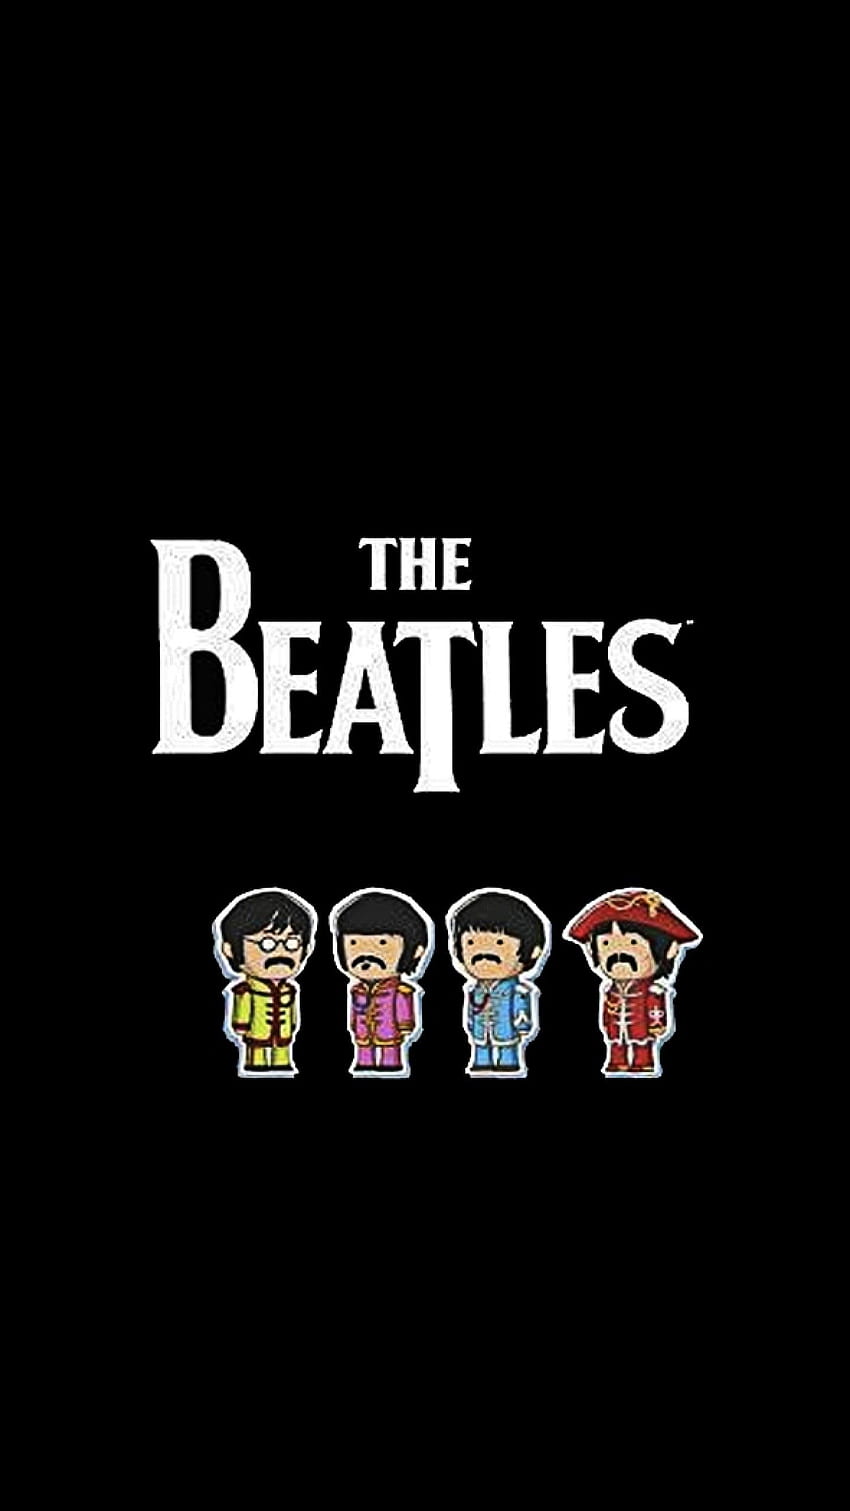 Vista previa de The Beatles, Nombre, Miembros, - Beatles iPhone fondo de pantalla del teléfono